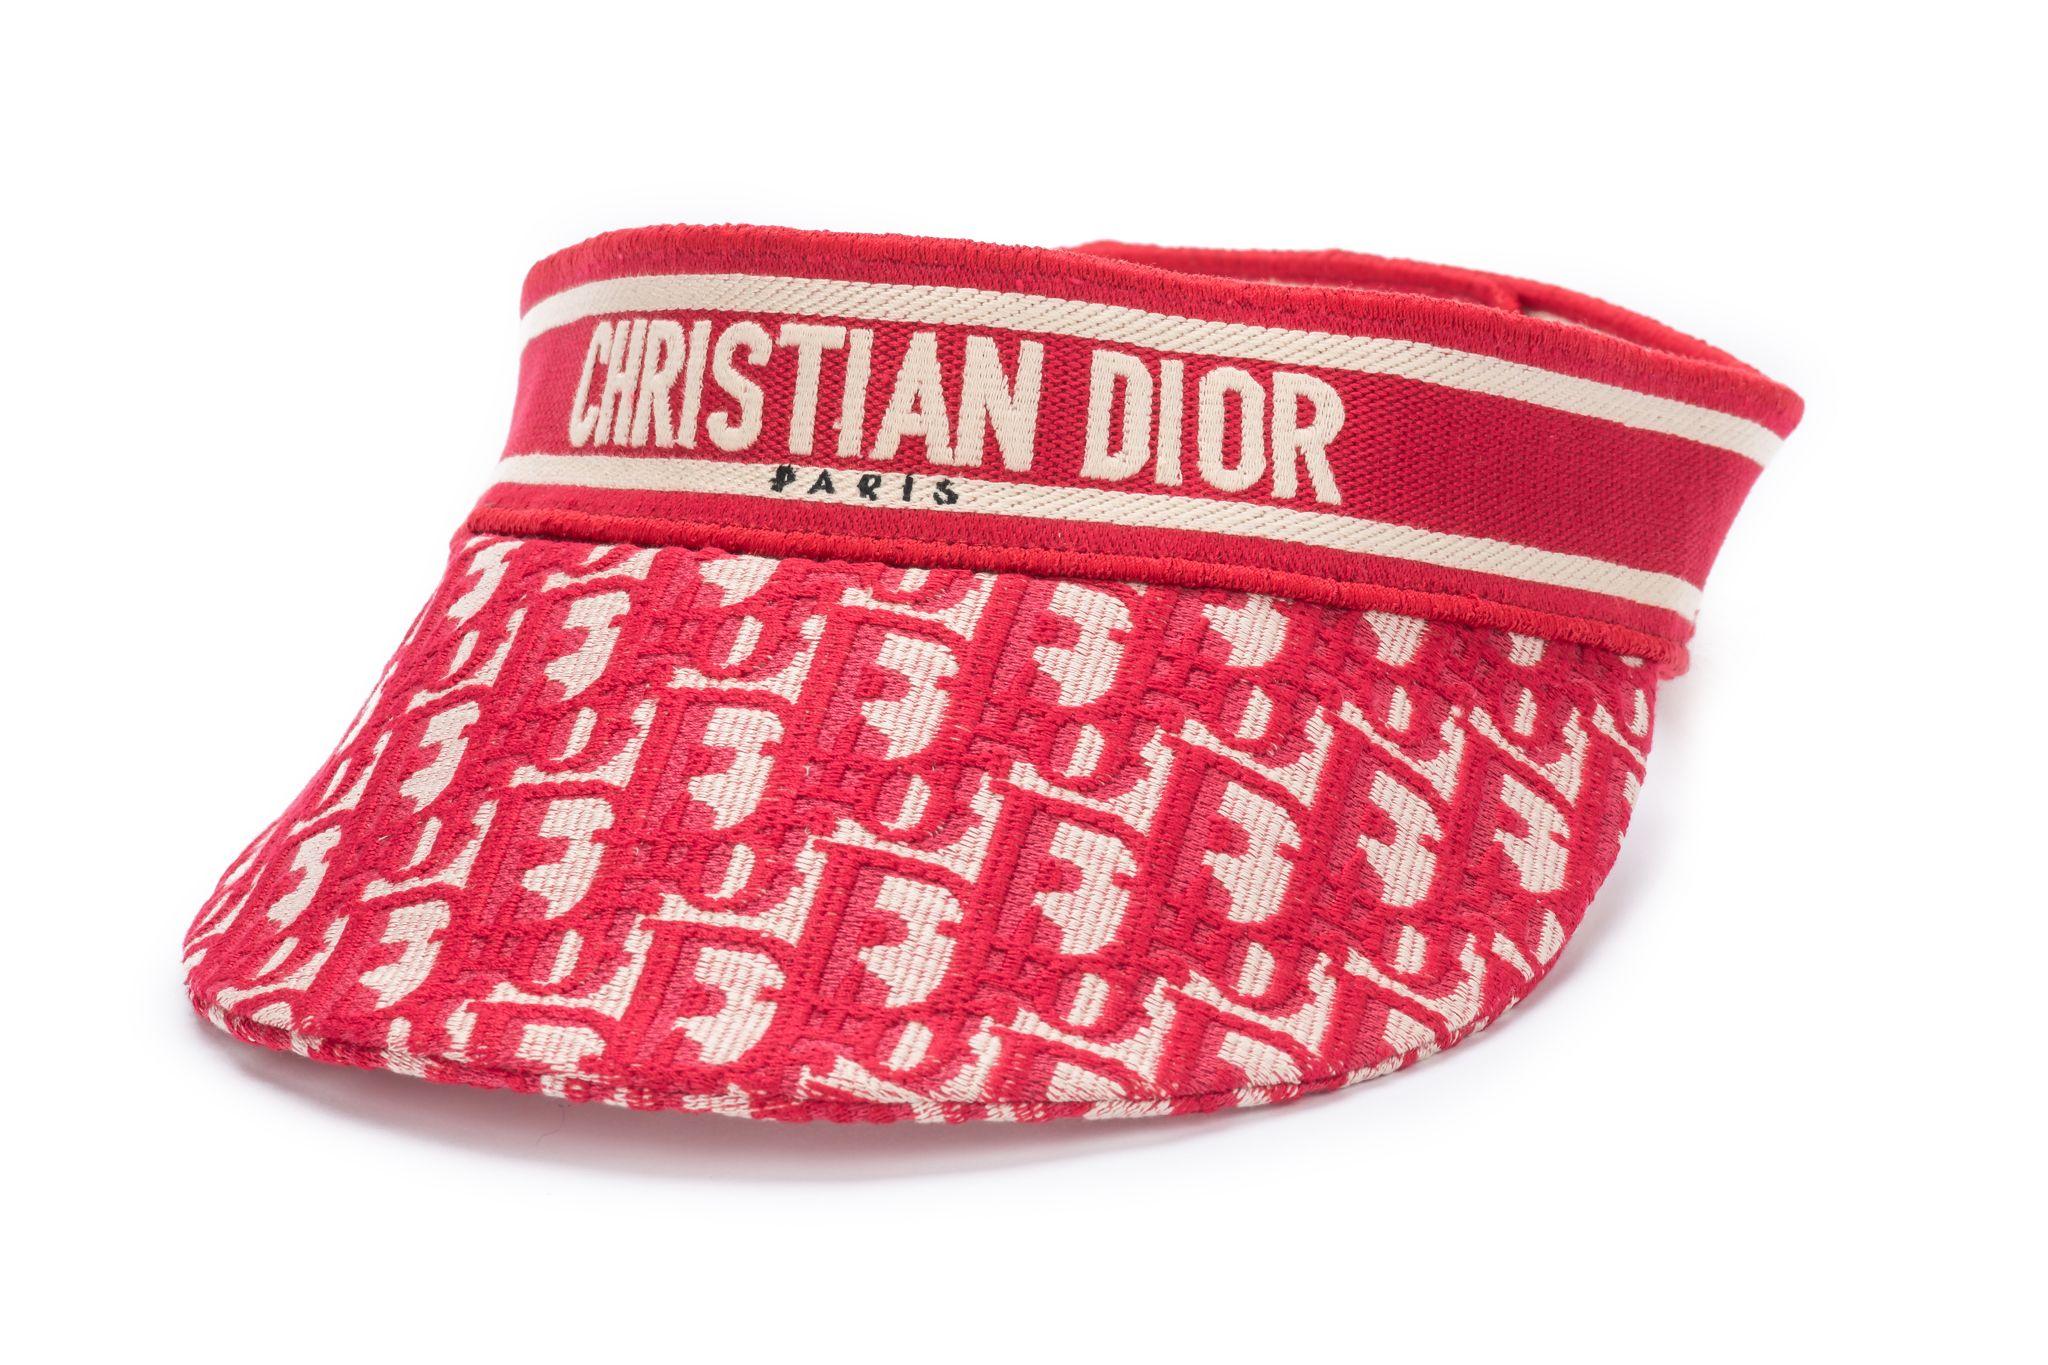 Rotes Christian Dior Visier mit schrägem Motiv. Mit einem farblich abgestimmten, bestickten Band mit dem Schriftzug 